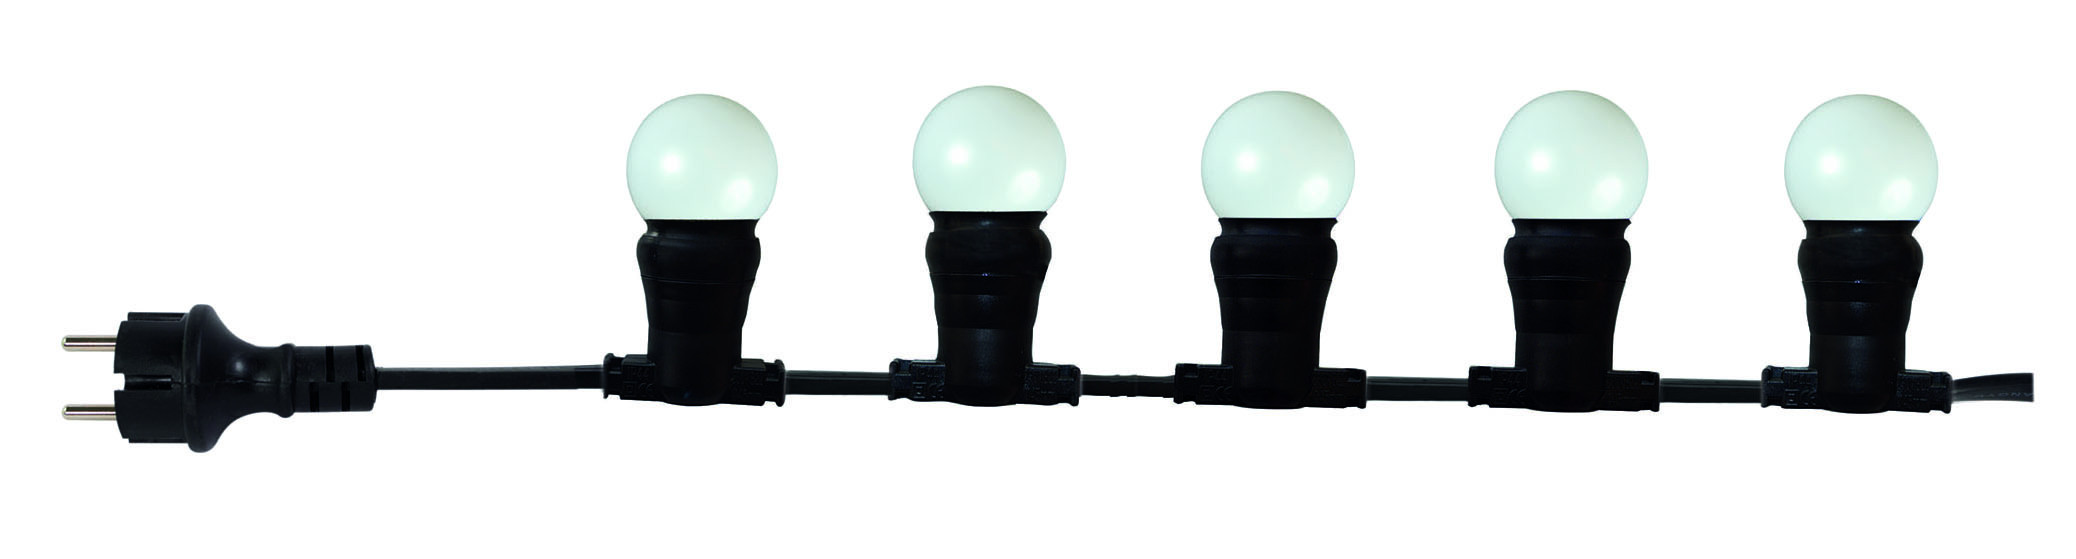 Guirlande extérieure 10 ampoules B22 blanc chaud 500 lumens Pro 10m TIBELEC